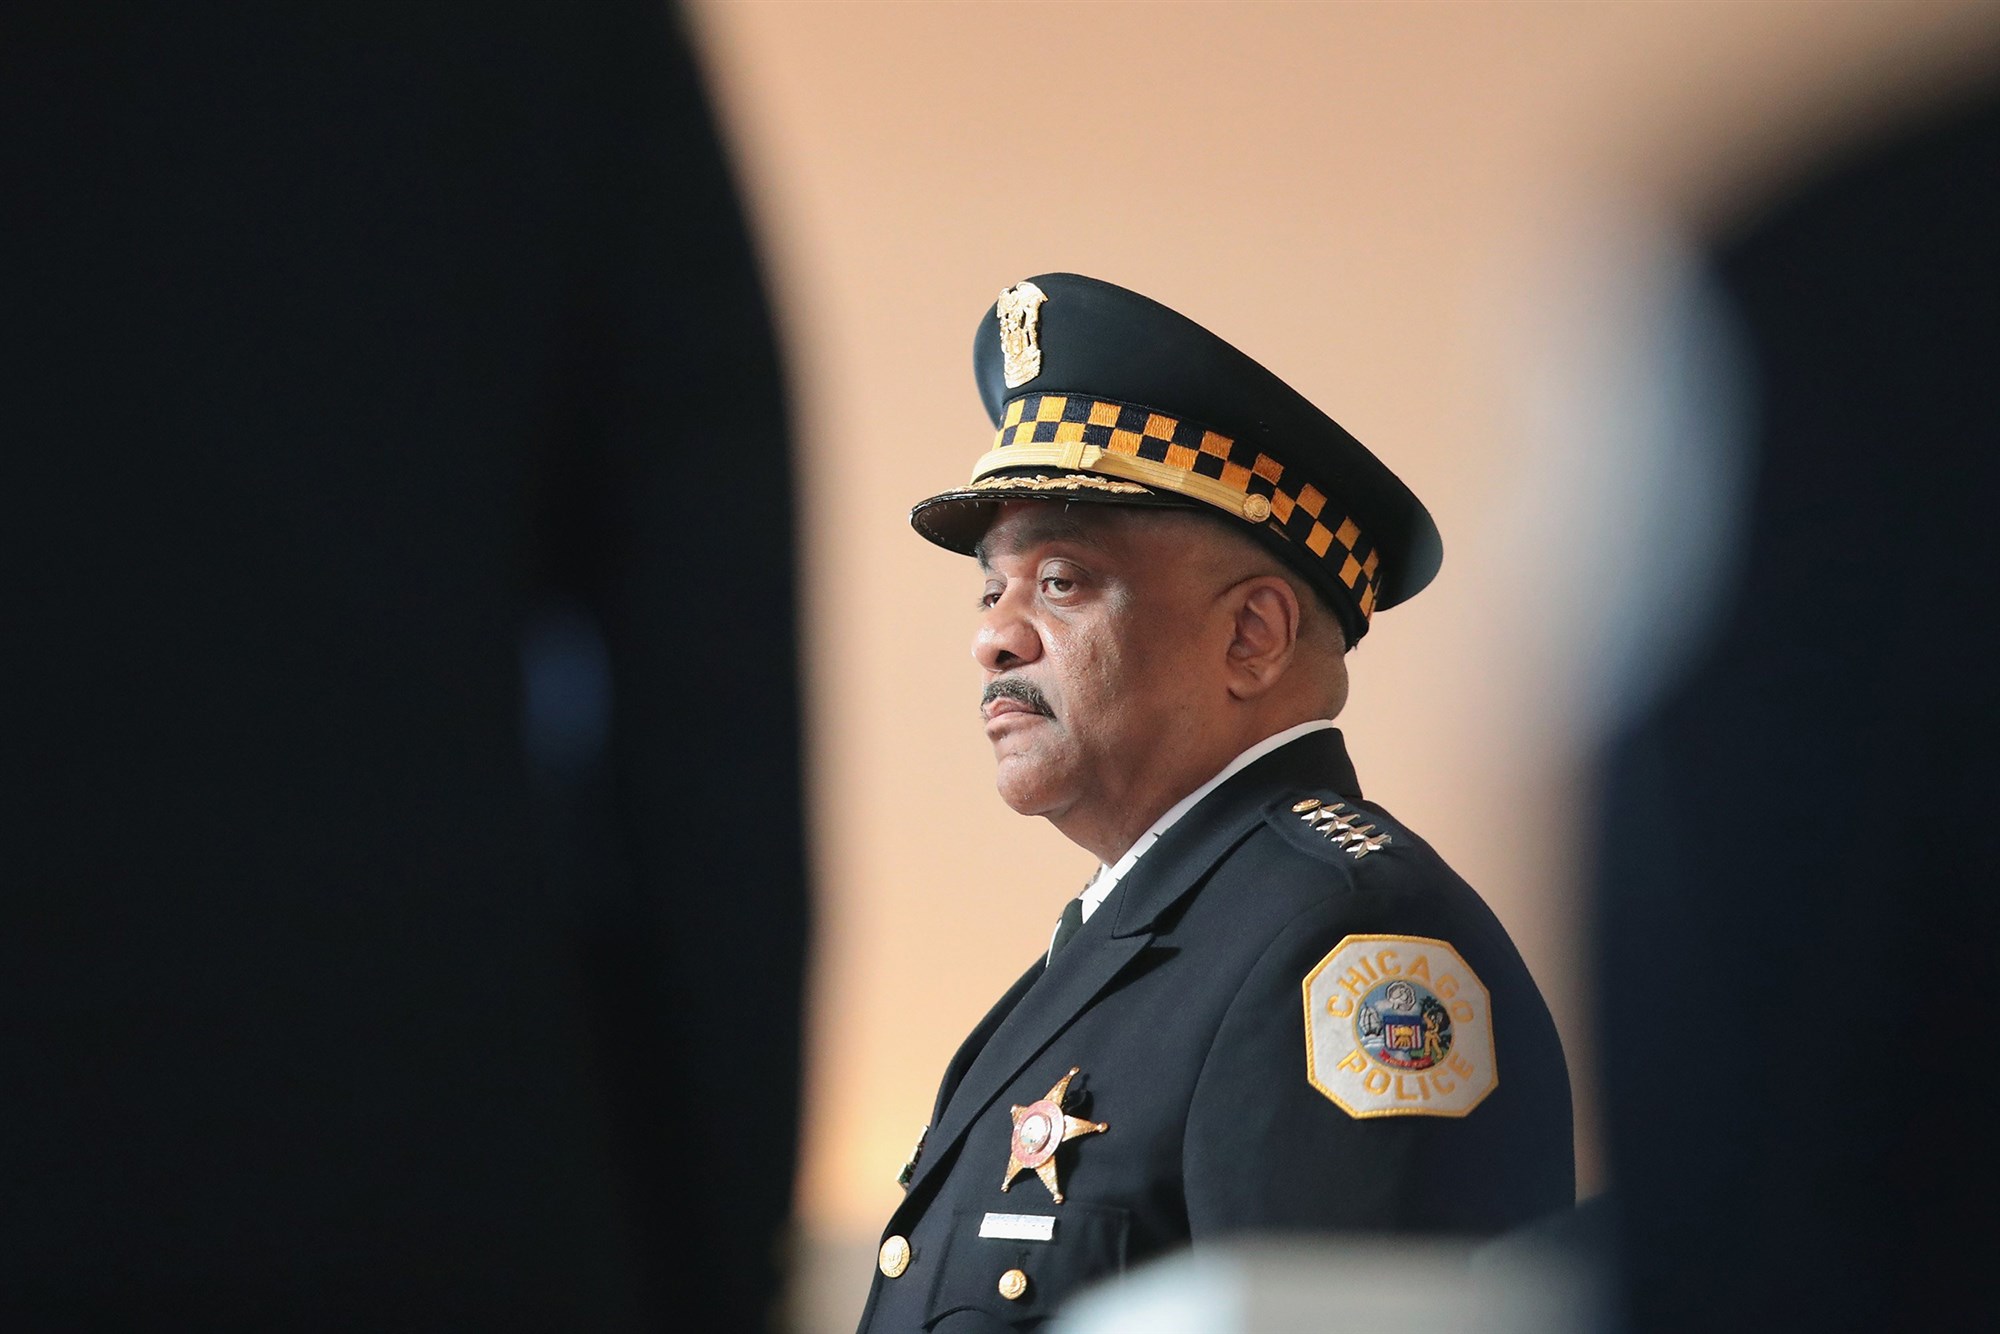 Oficial de Chicago demanda a exjefe de policía por agredirla sexualmente durante años